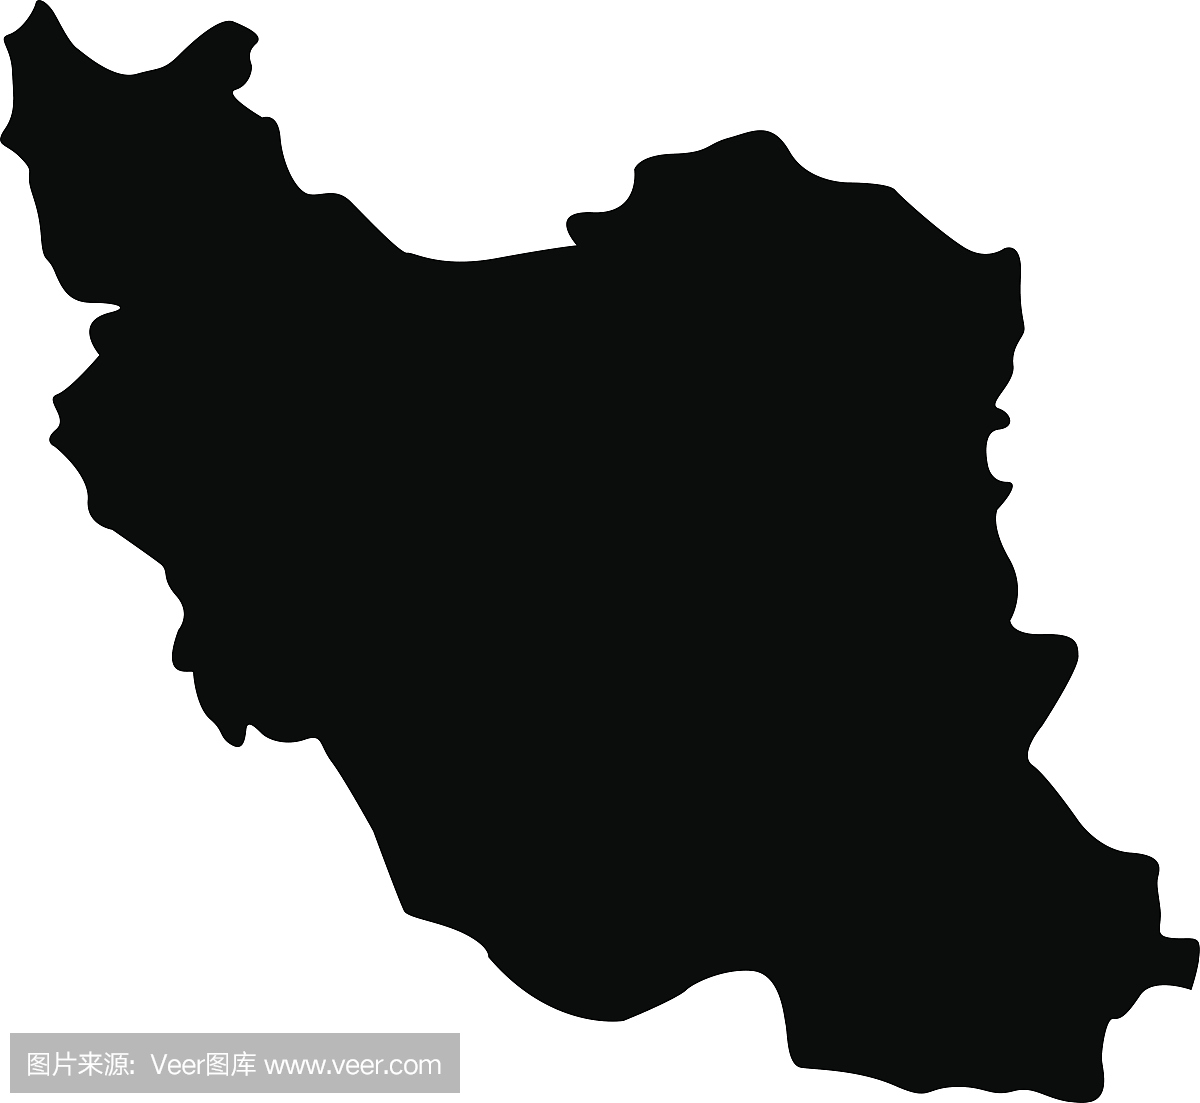 伊朗地图